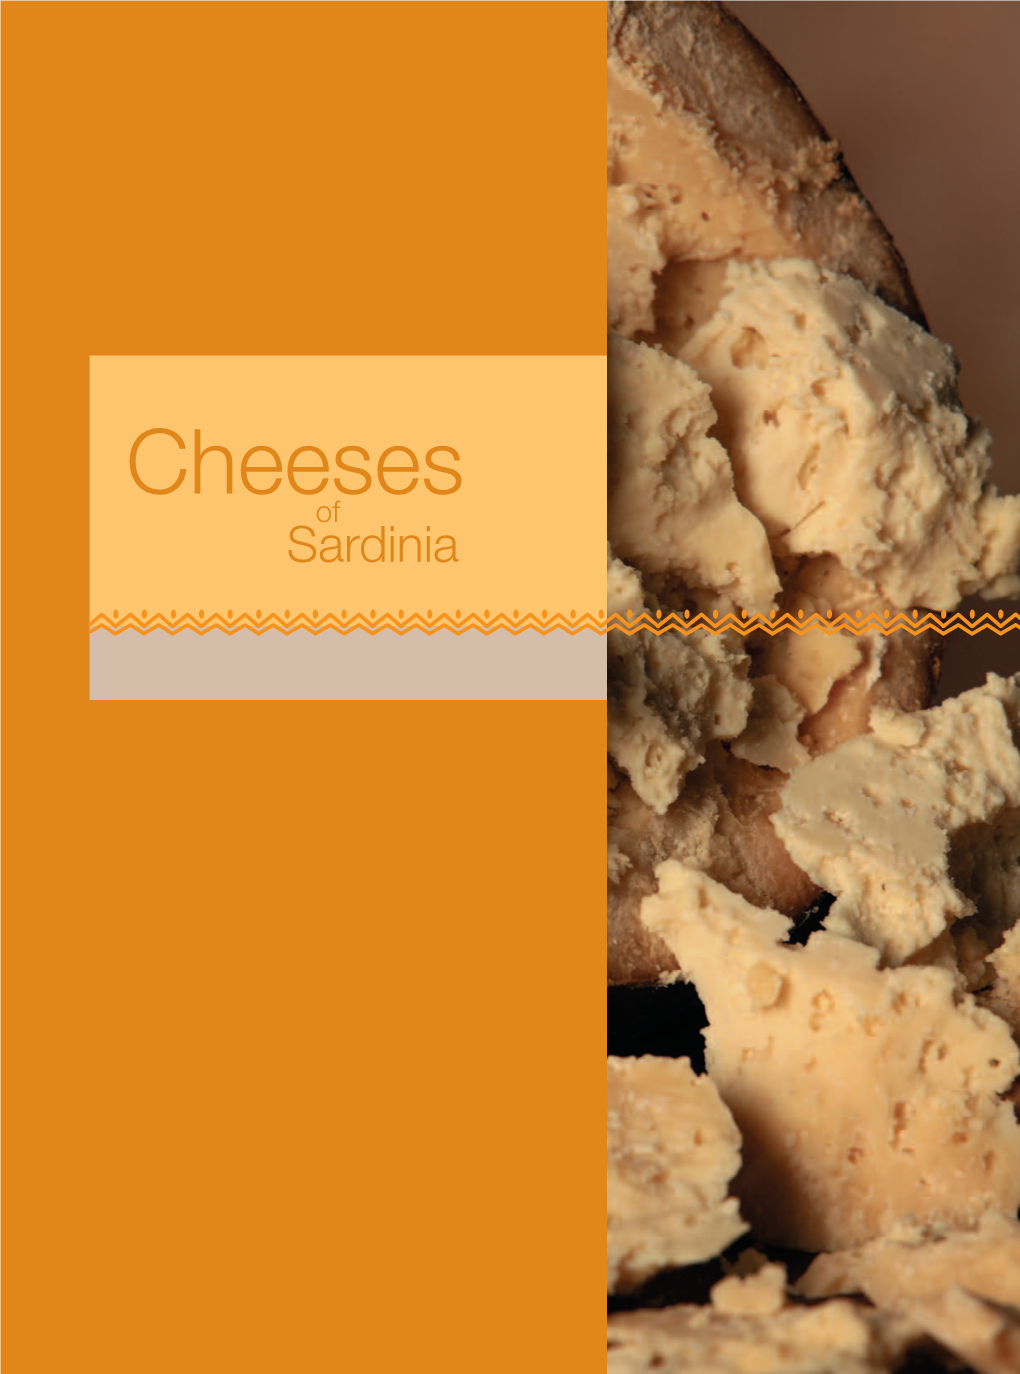 Cheeses of Sardinia